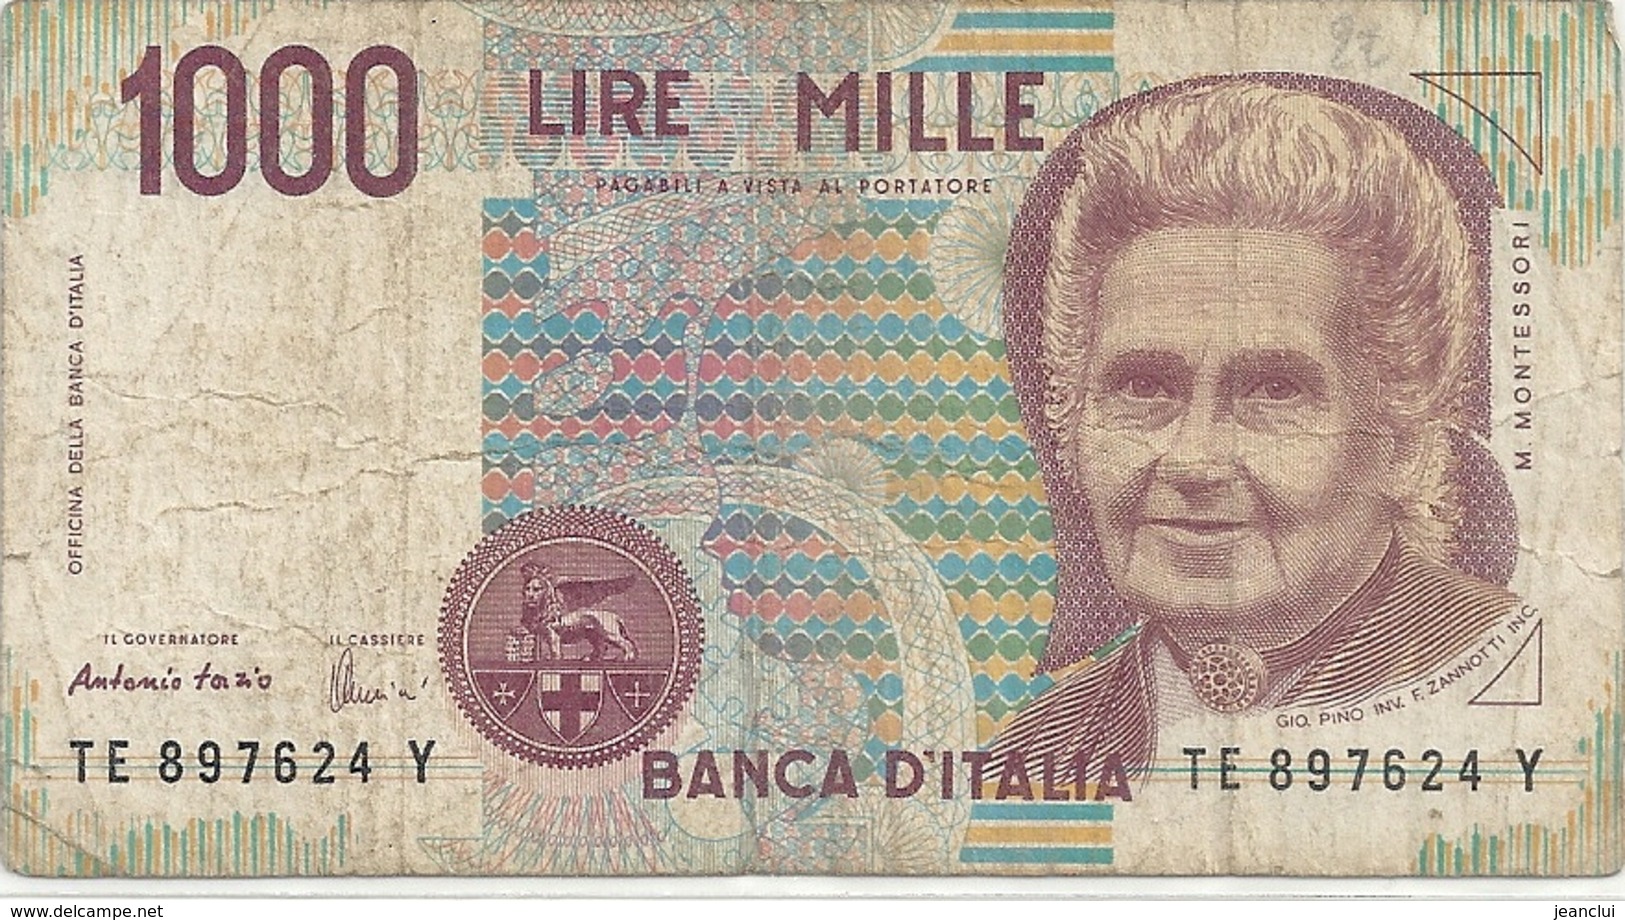 BANCA D'ITALIA . 1.000 LIRE . DECRETO MINISTERIALE 3 OTTOBRE 1990. " M.MONTESSORI " N° TE 897624 Y   . 2 SCANES - 1.000 Lire